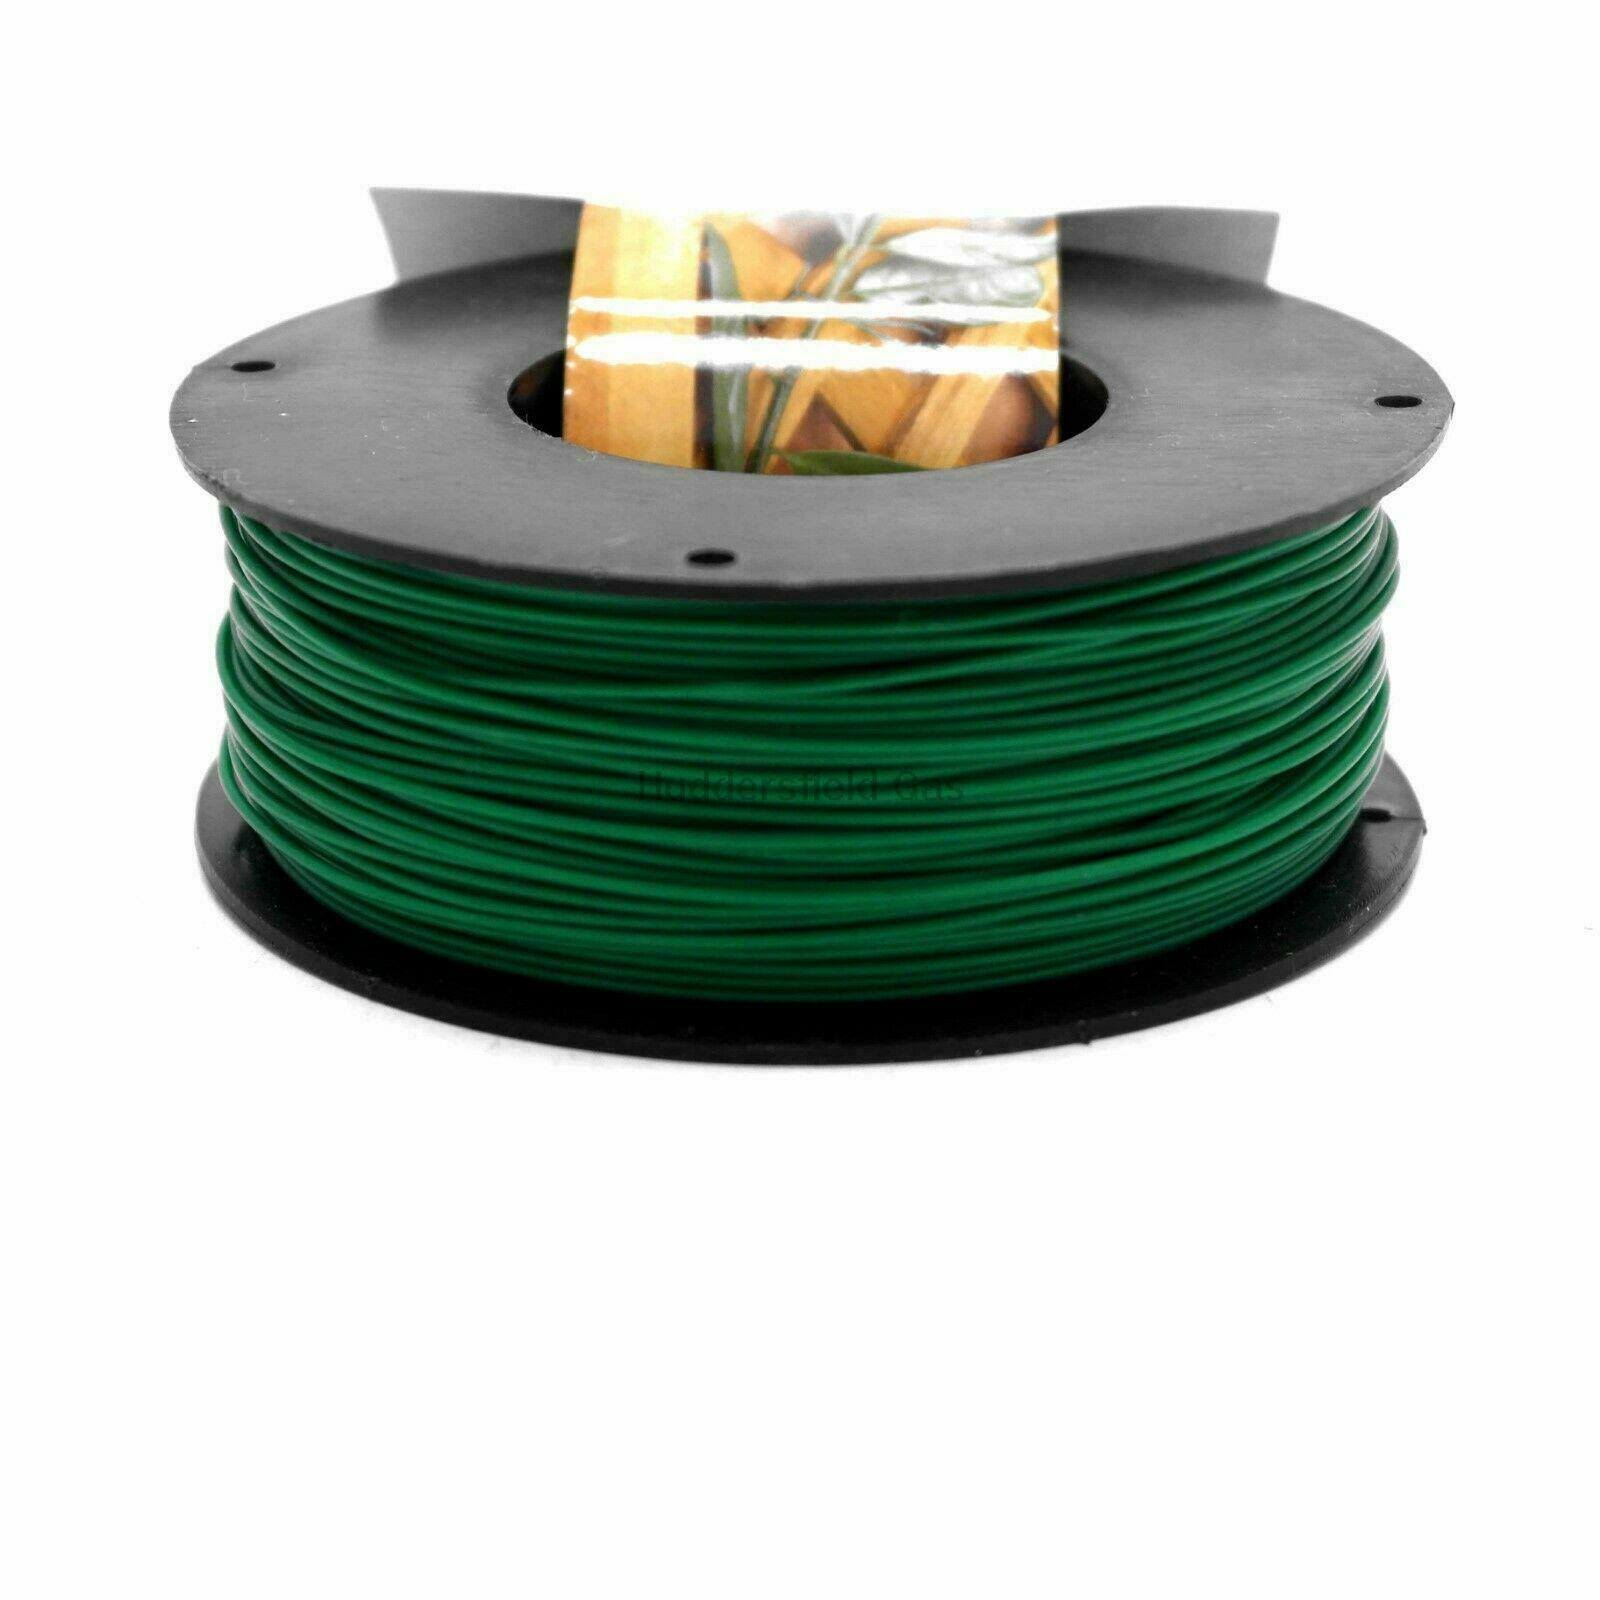 1.2mm x 100m Green PVC Garden Wire